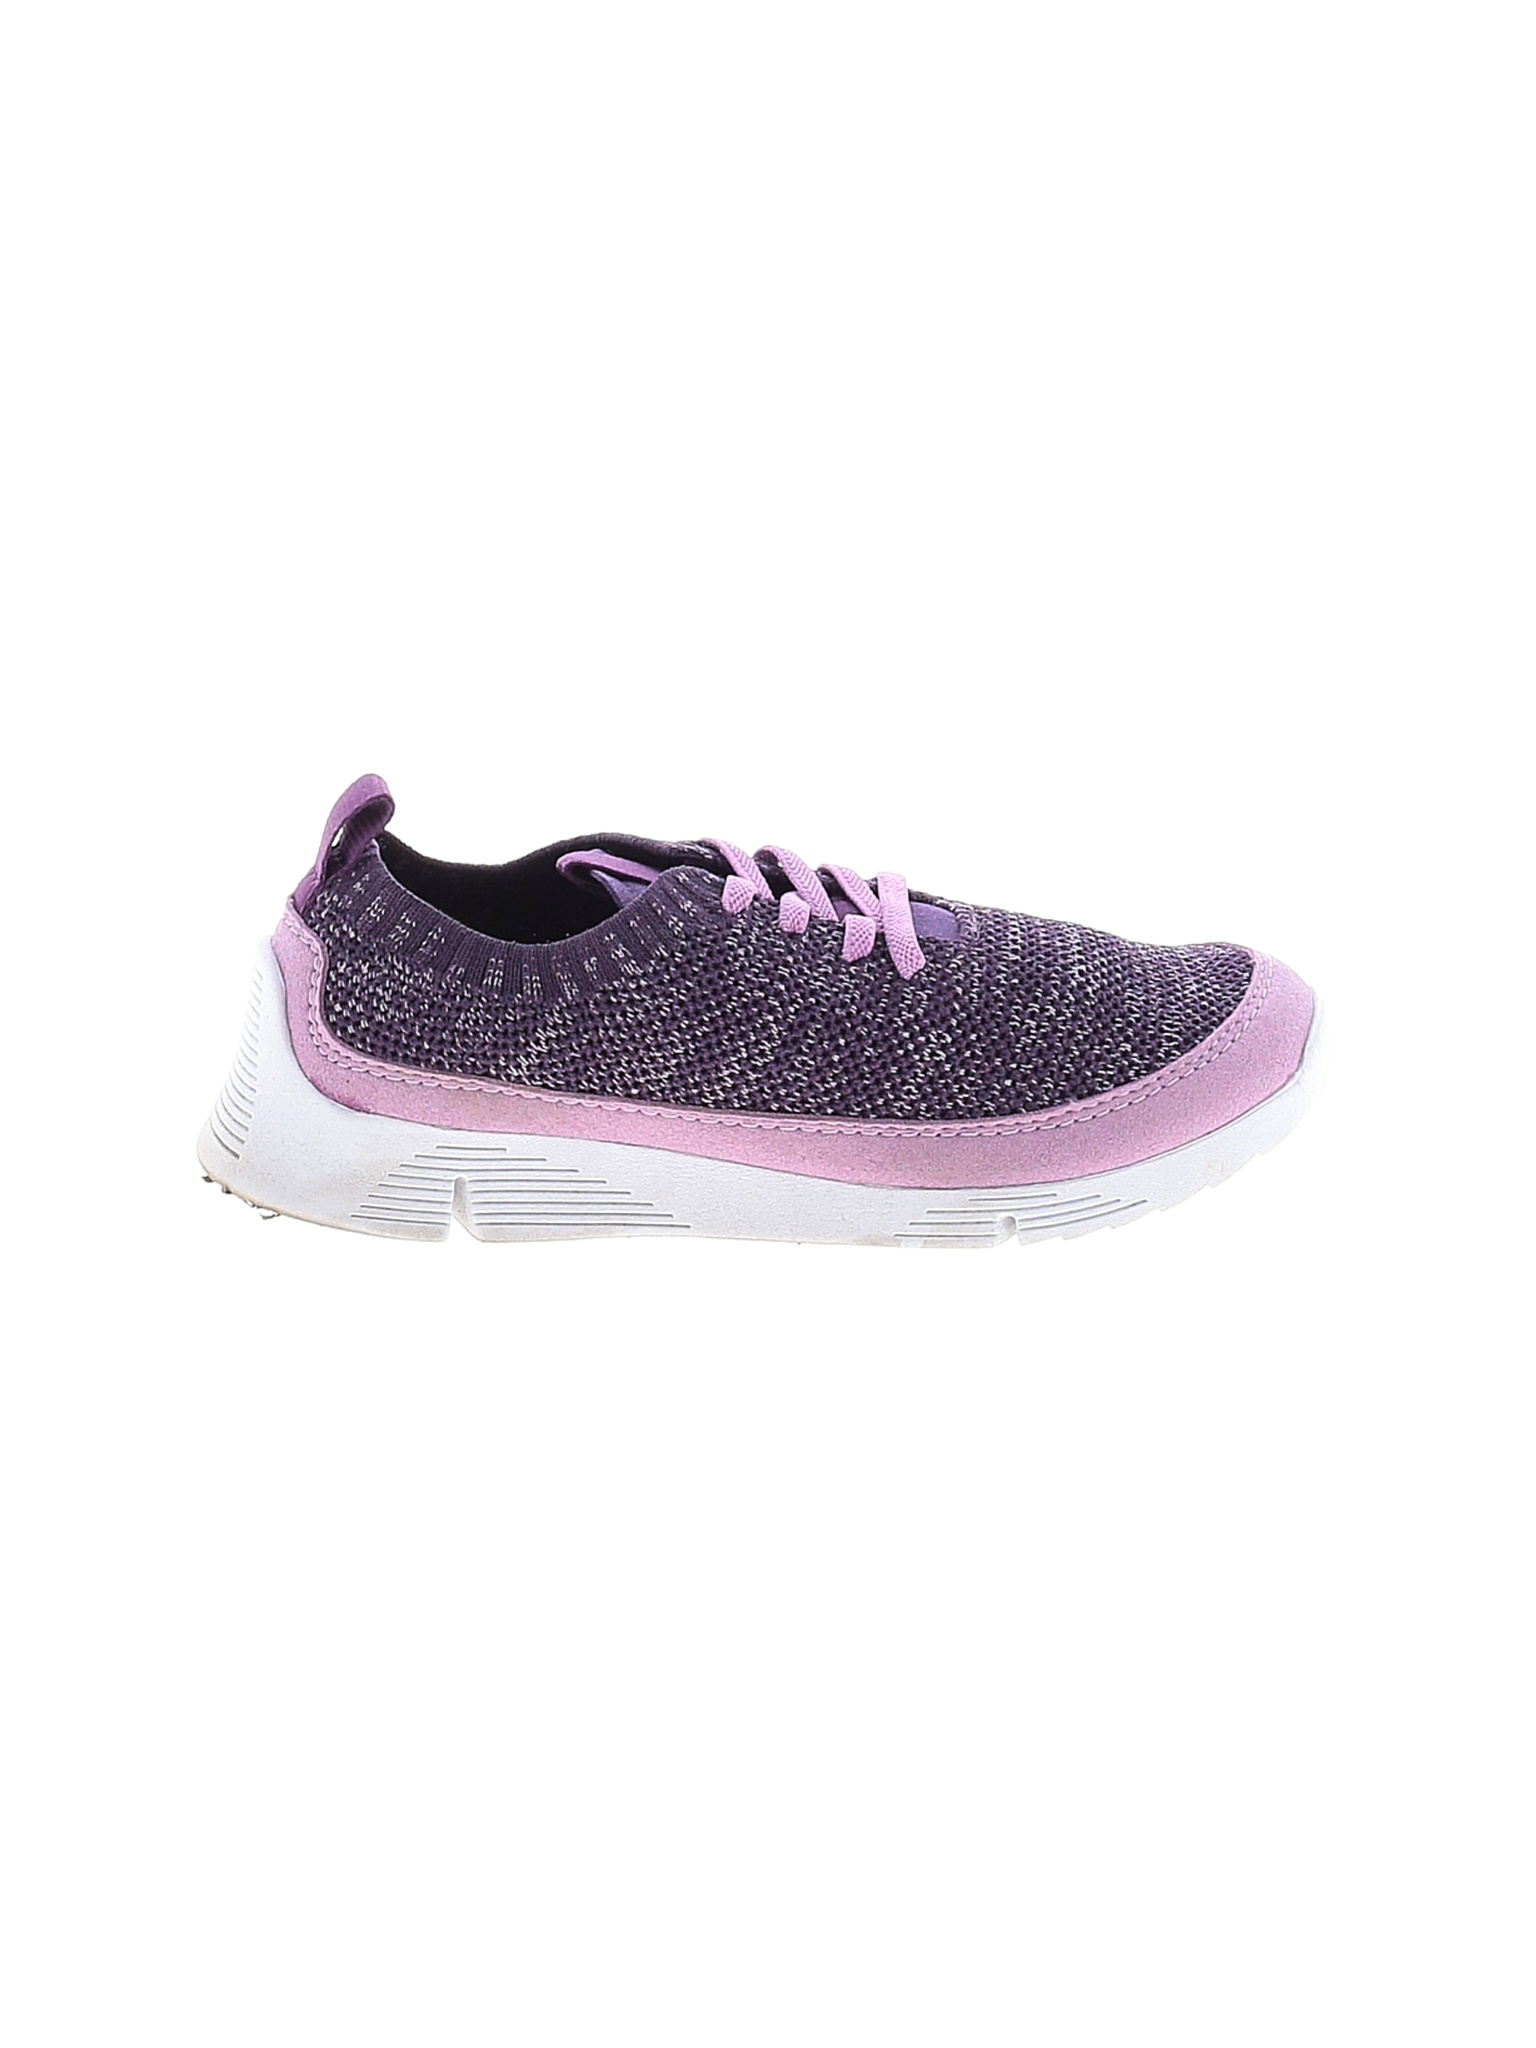 Clarks Girls Purple Sneakers 2.5 | eBay